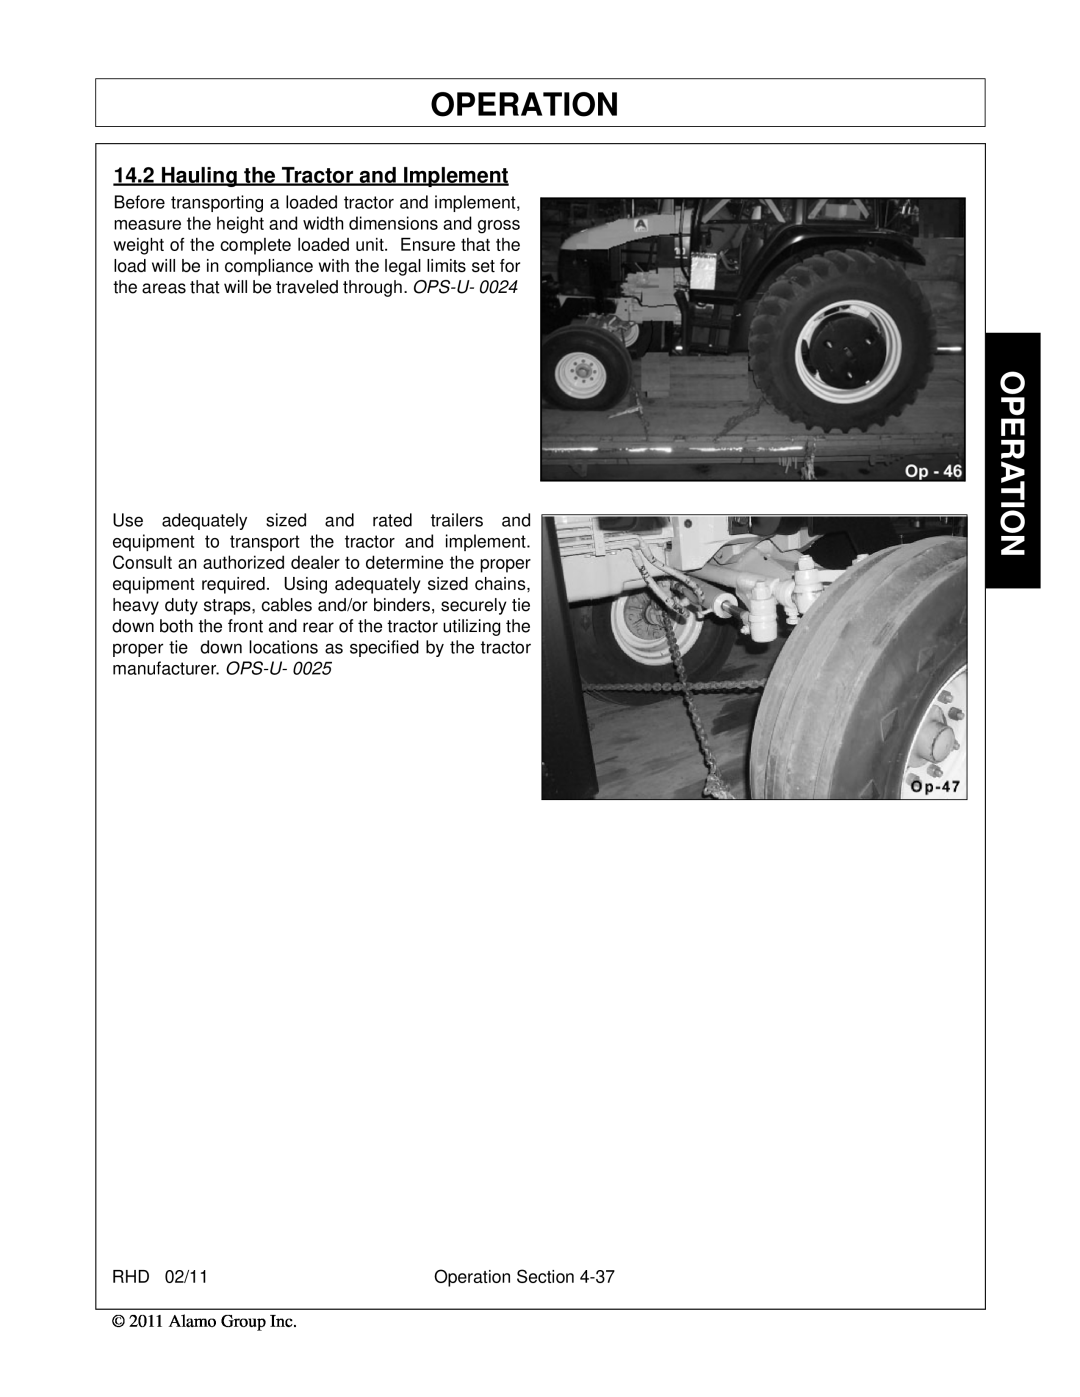 Rhino Mounts RHD96, RHD88, RHD74, RHD62 manual Operation, Hauling the Tractor and Implement 